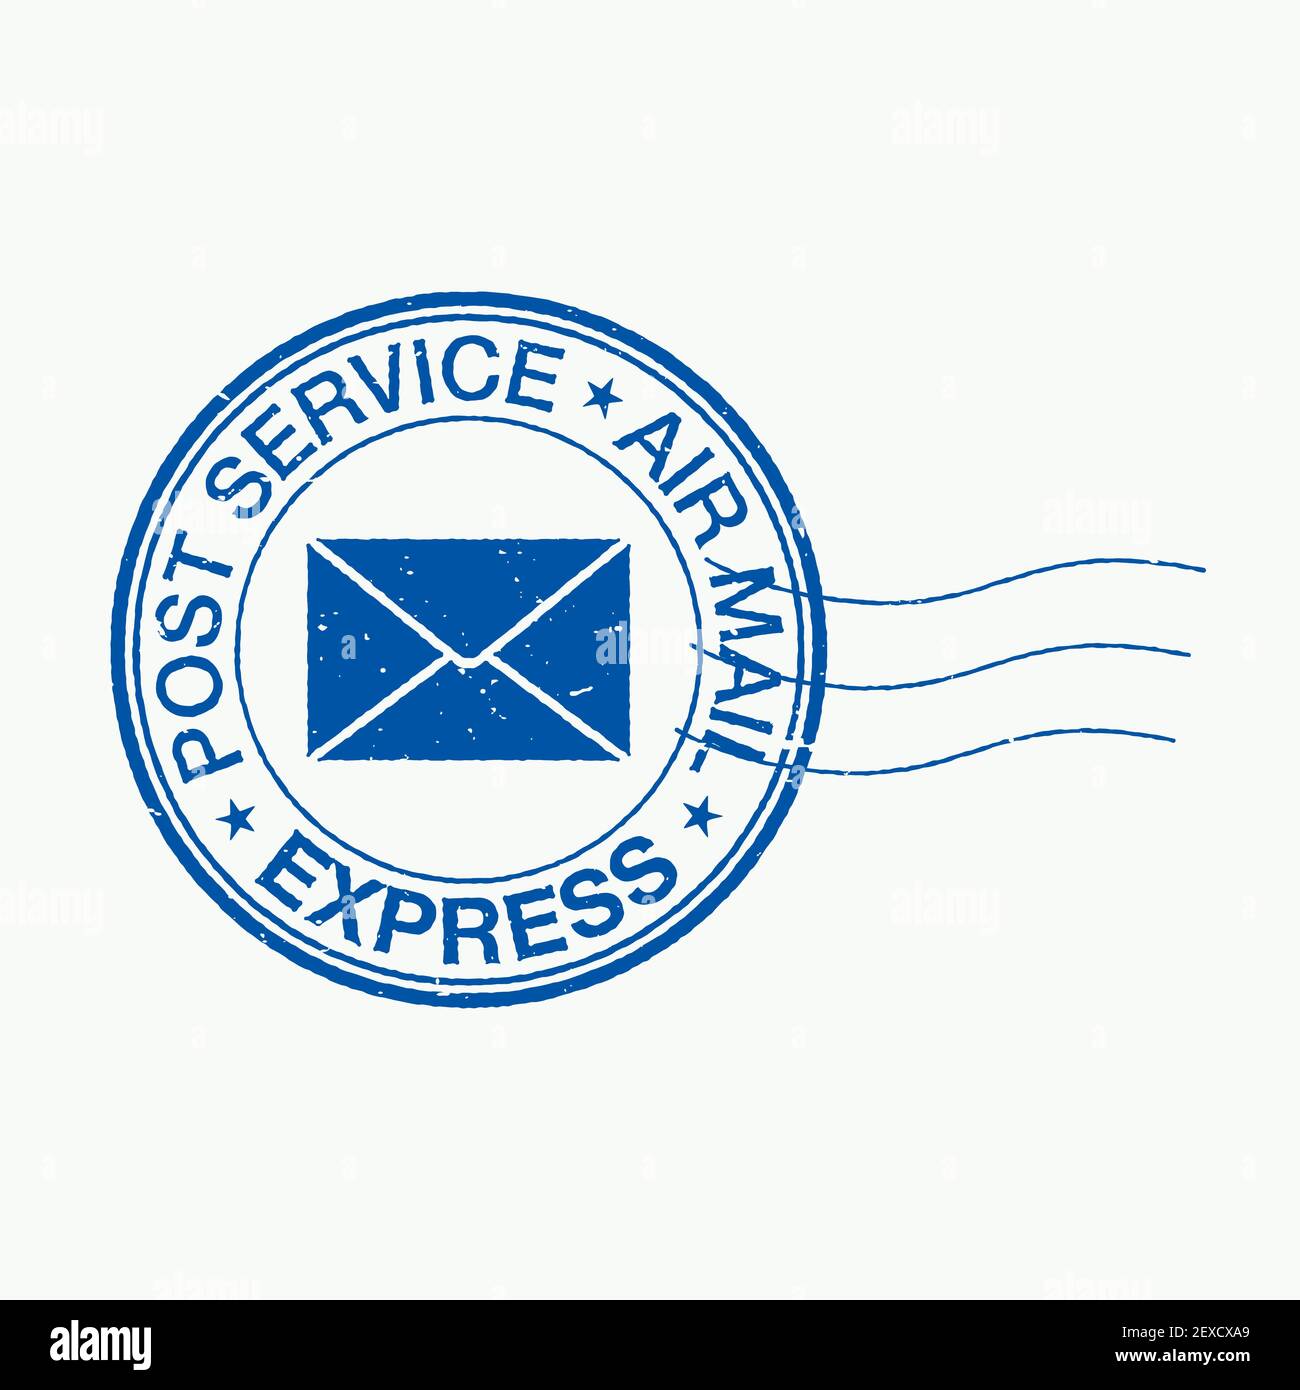 Illustration du vecteur de timbre postal vieilli. Timbre-poste bleu de forme ronde, avec service de poste, courrier aérien et texte express. Illustration de Vecteur